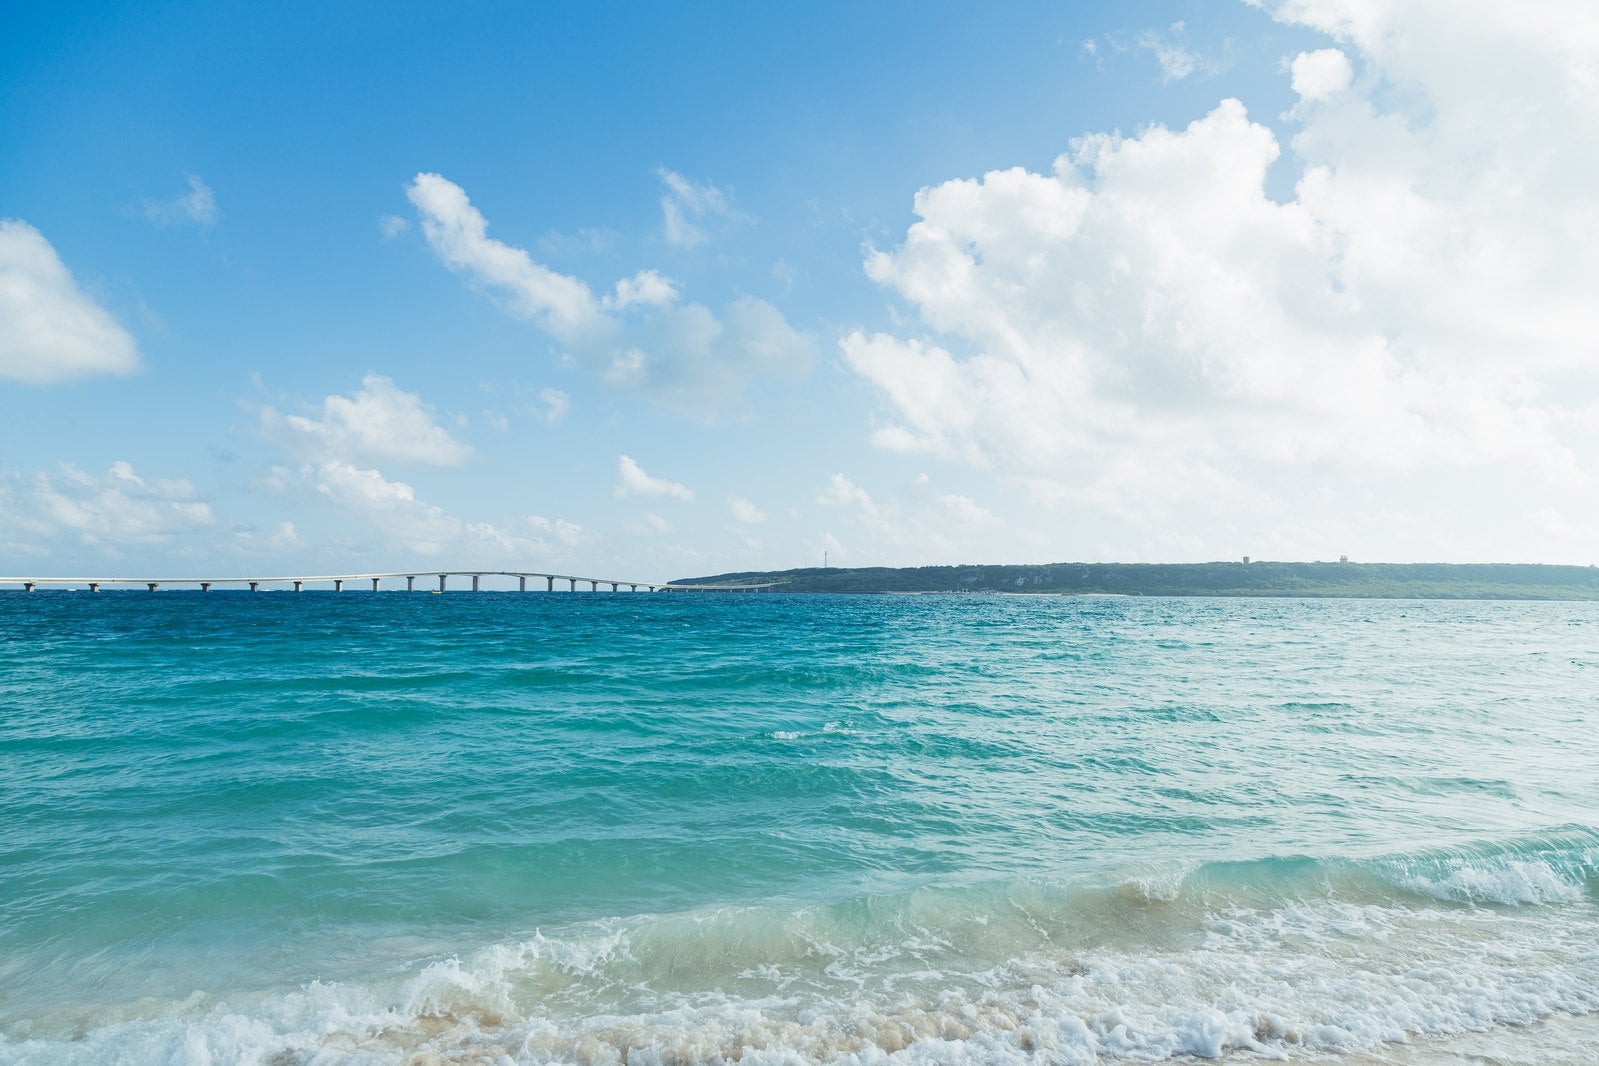 「遠景の伊良部大橋と宮古島の海」の写真